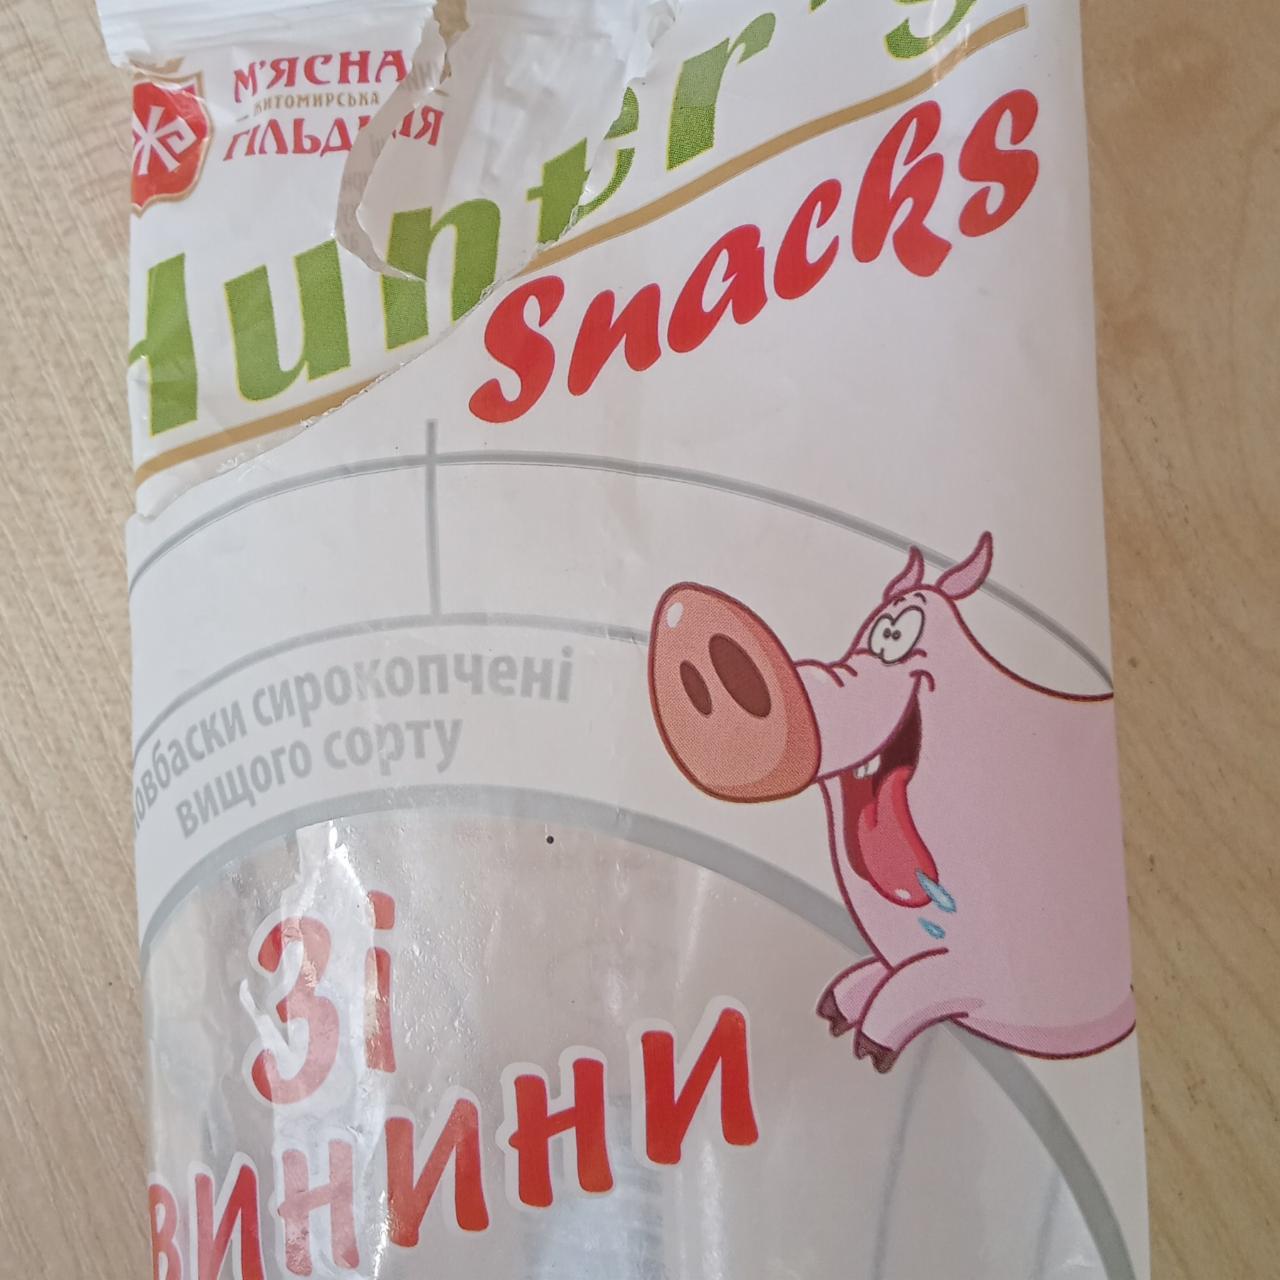 Фото - Ковбаски сирокопчені зі свинини Hunter Snacks М'ясна Гільдія